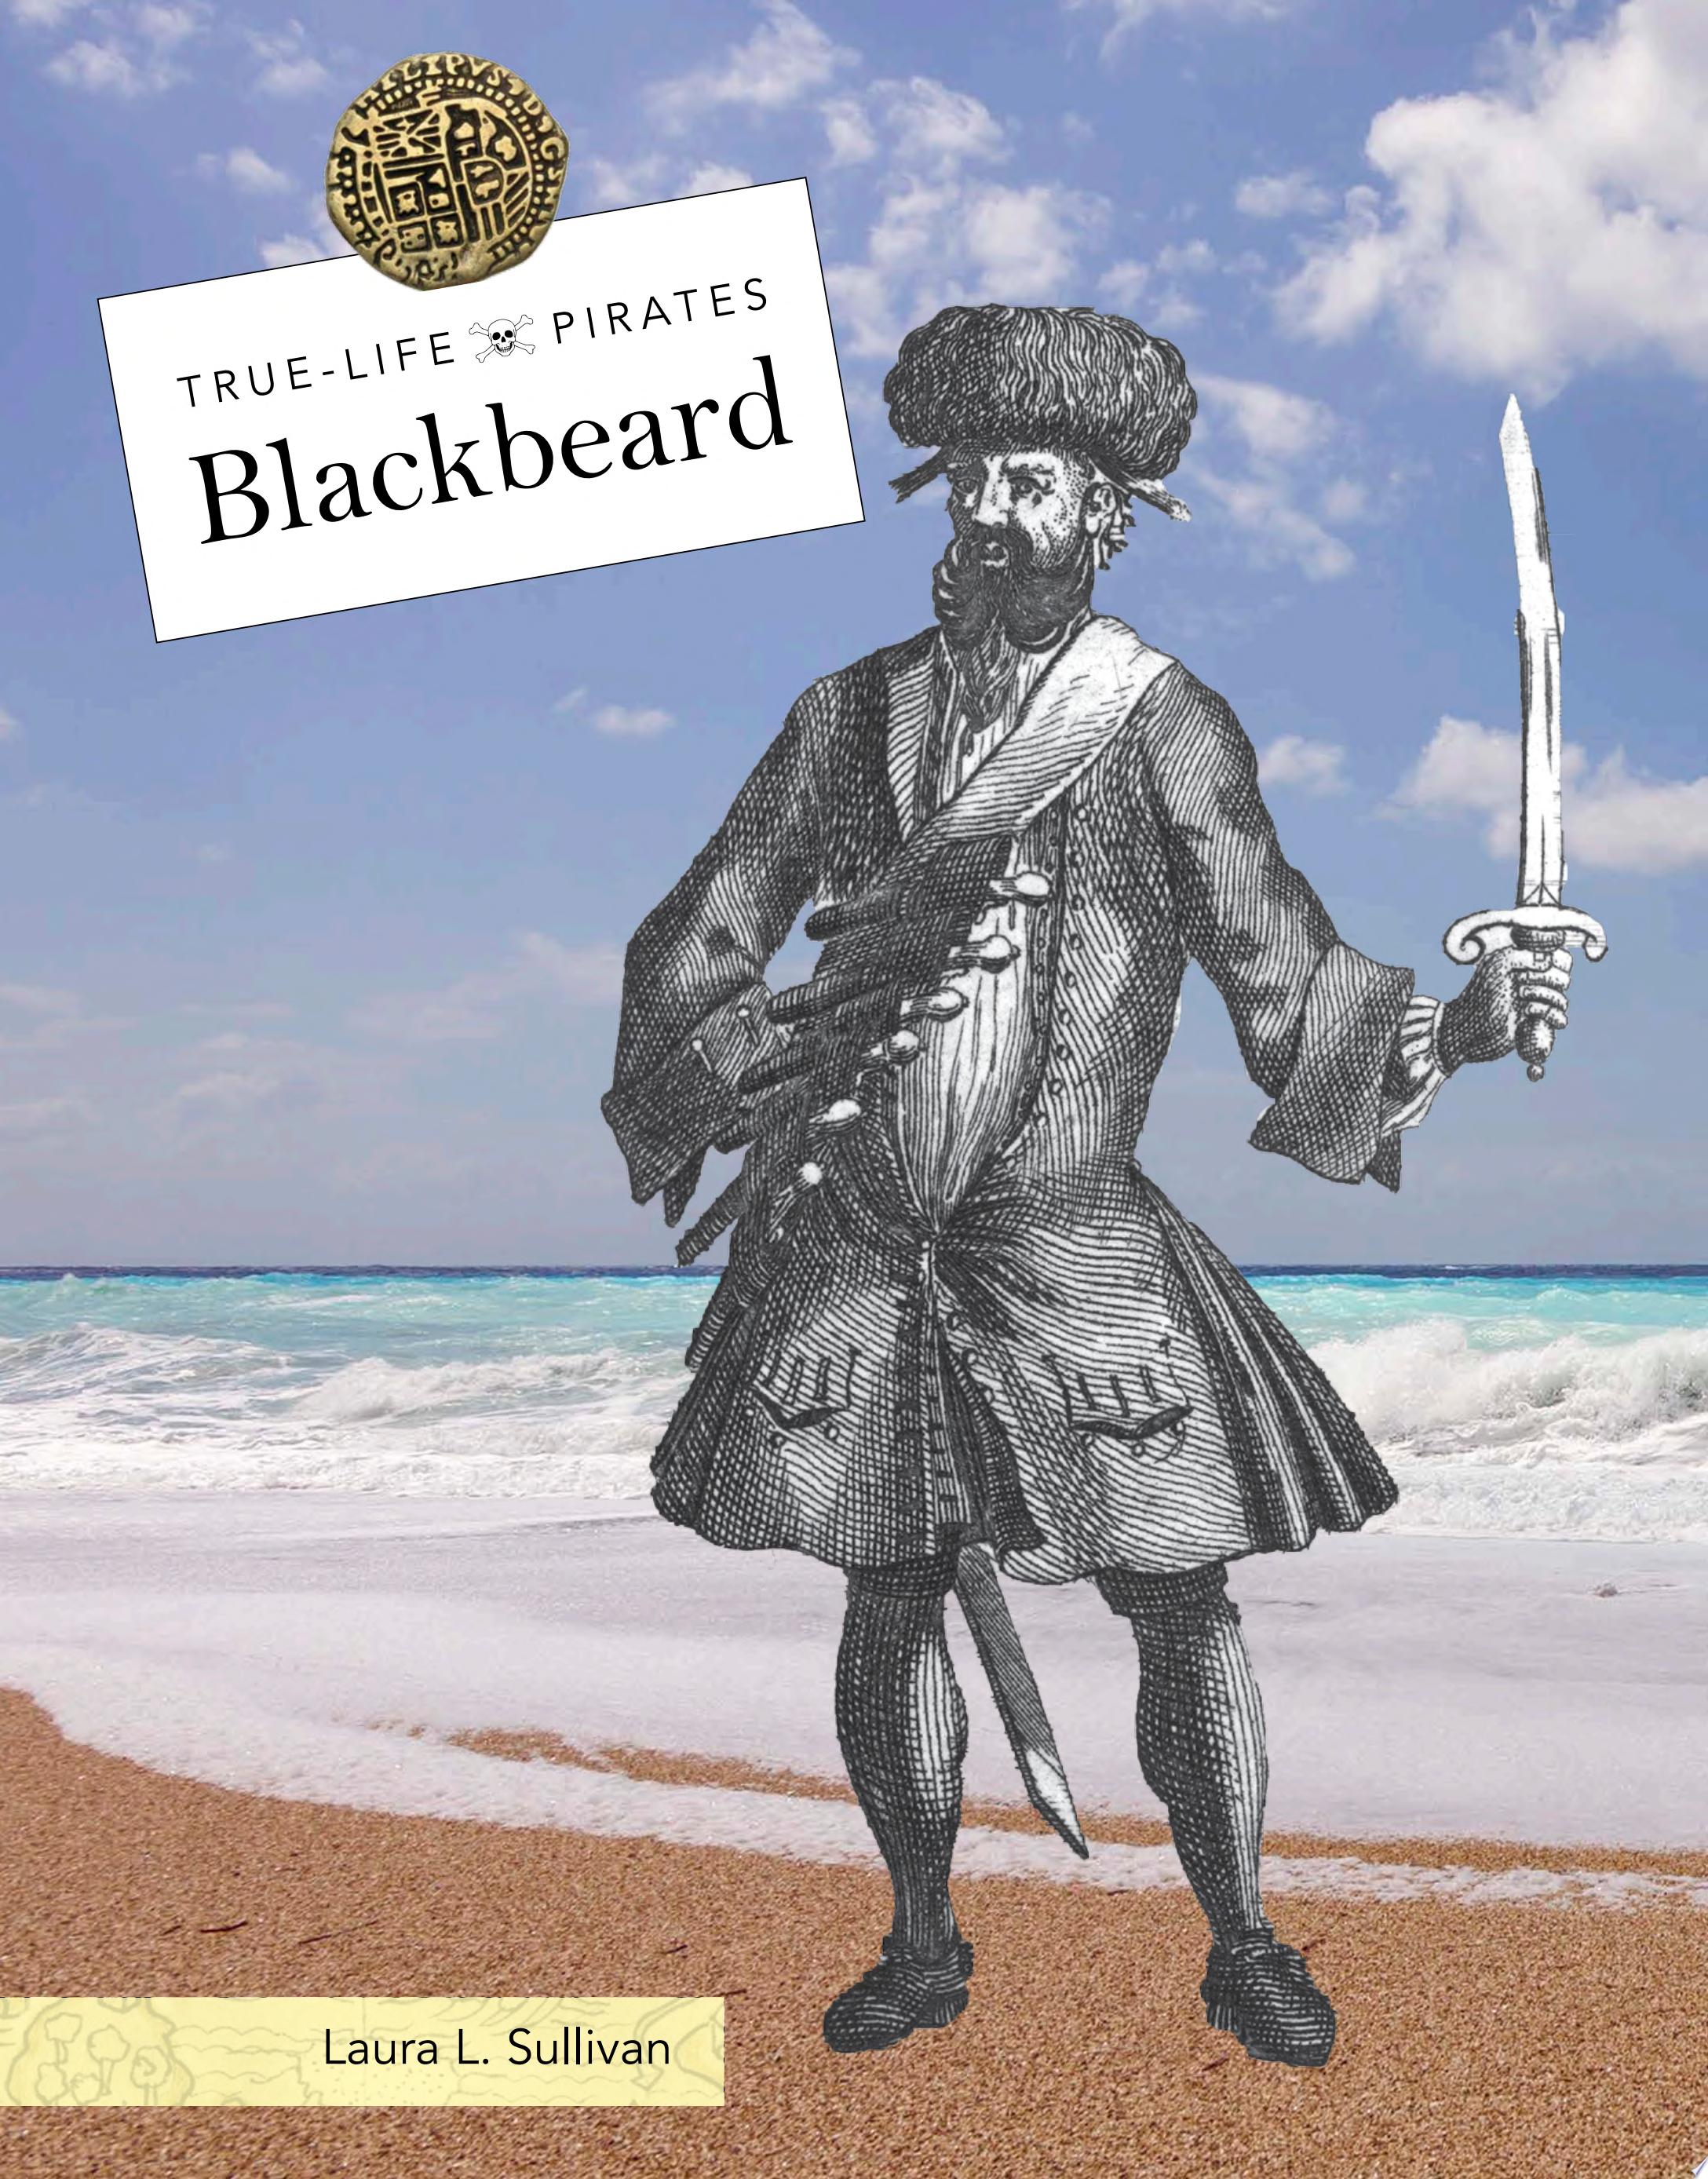 Image for "Blackbeard"